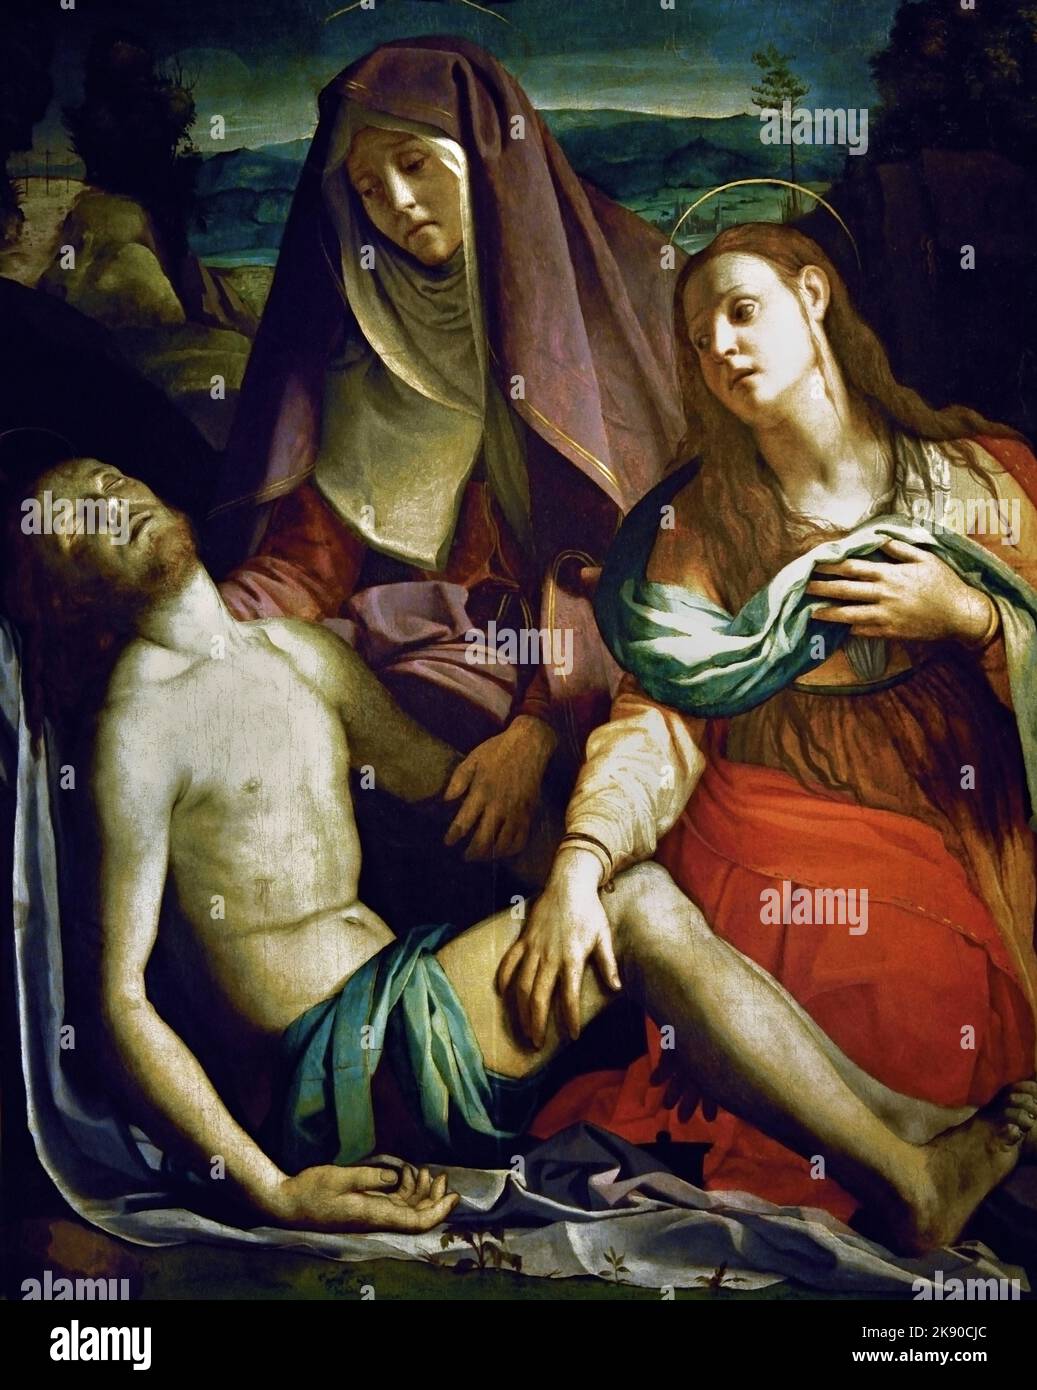 Pietà 1529 Gemälde von Agnolo Bronzino, Uffizien , Florenz, Italien. Klage über Christus, nachdem Jesus gekreuzigt wurde, Kreuzigung, sein Körper wurde entfernt, Kreuz, seine Freunde trauerten über seinen Körper, Klage über den toten Christus, Kirche, Stockfoto